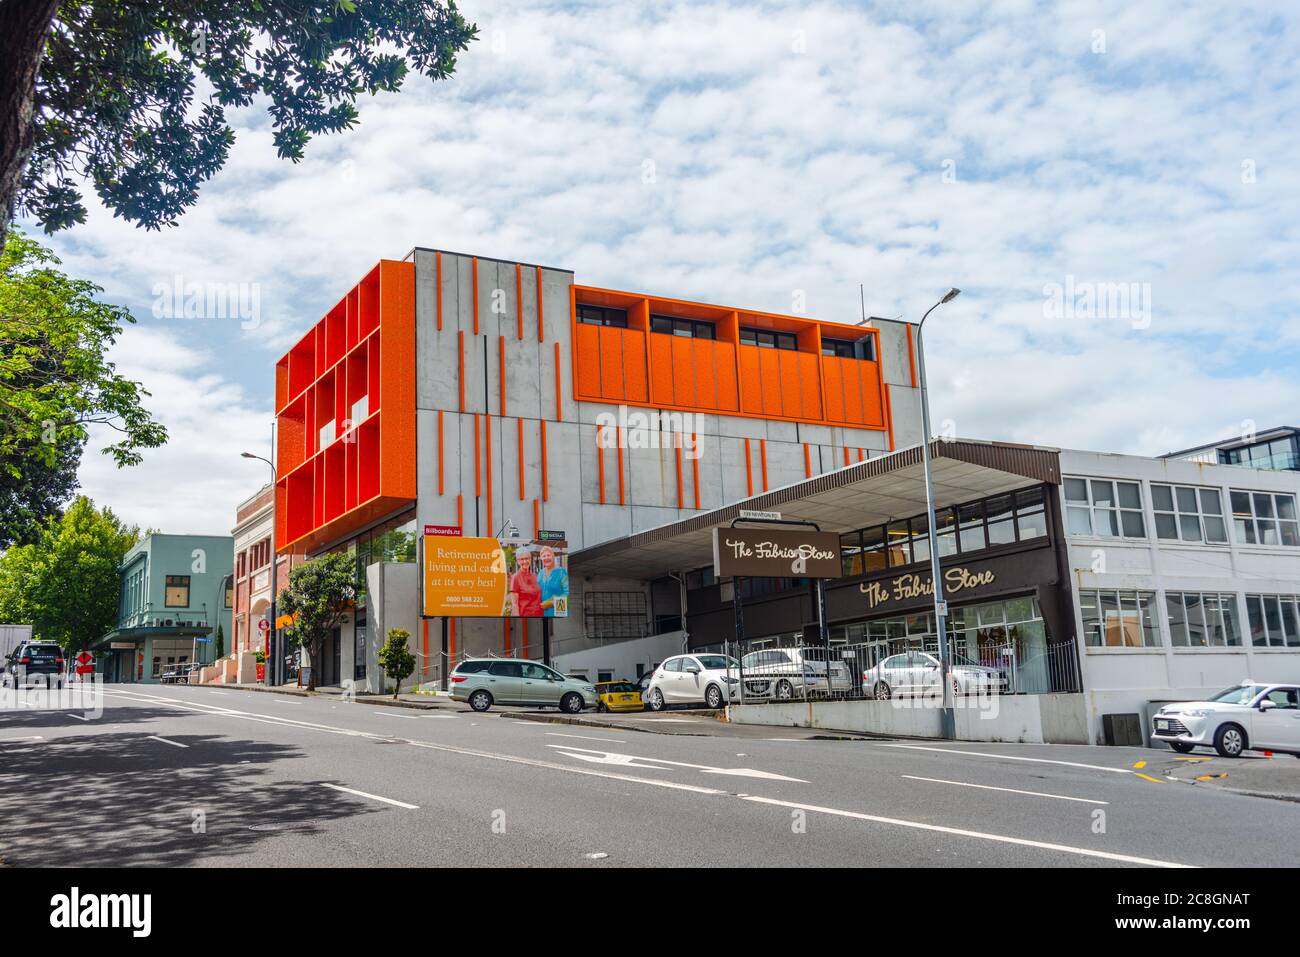 Architettura moderna, cemento e arancio al neon, sobborgo di Aucklan, Nuova Zelanda Foto Stock